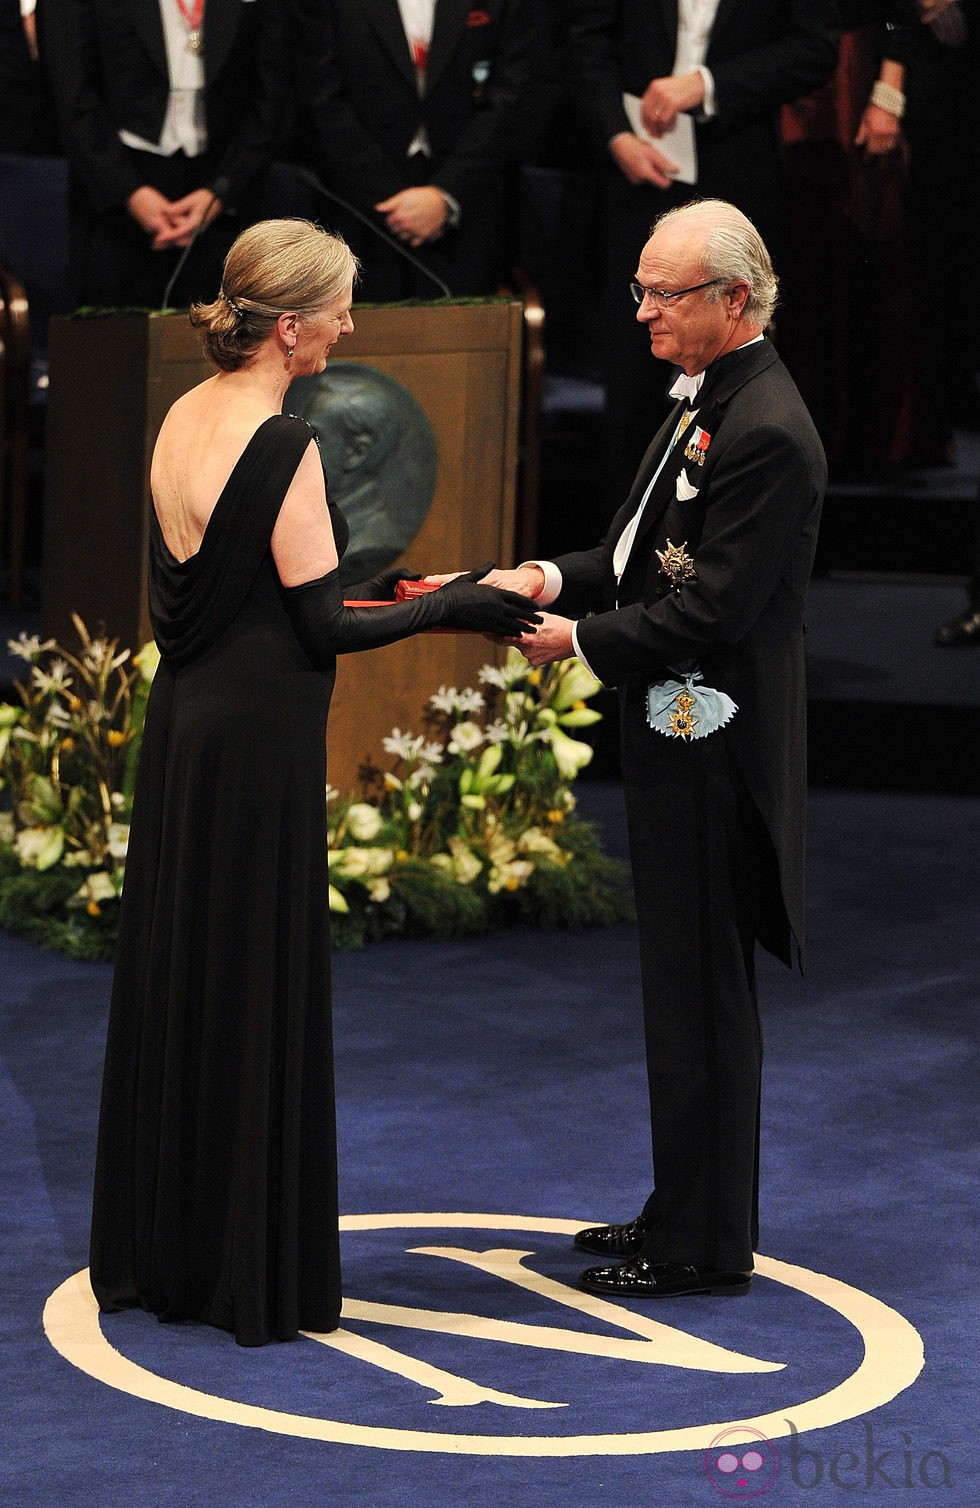 Claudia Steinman recibe el Nobel de Medicina 2011 de manos del Rey Carlos XVI Gustavo